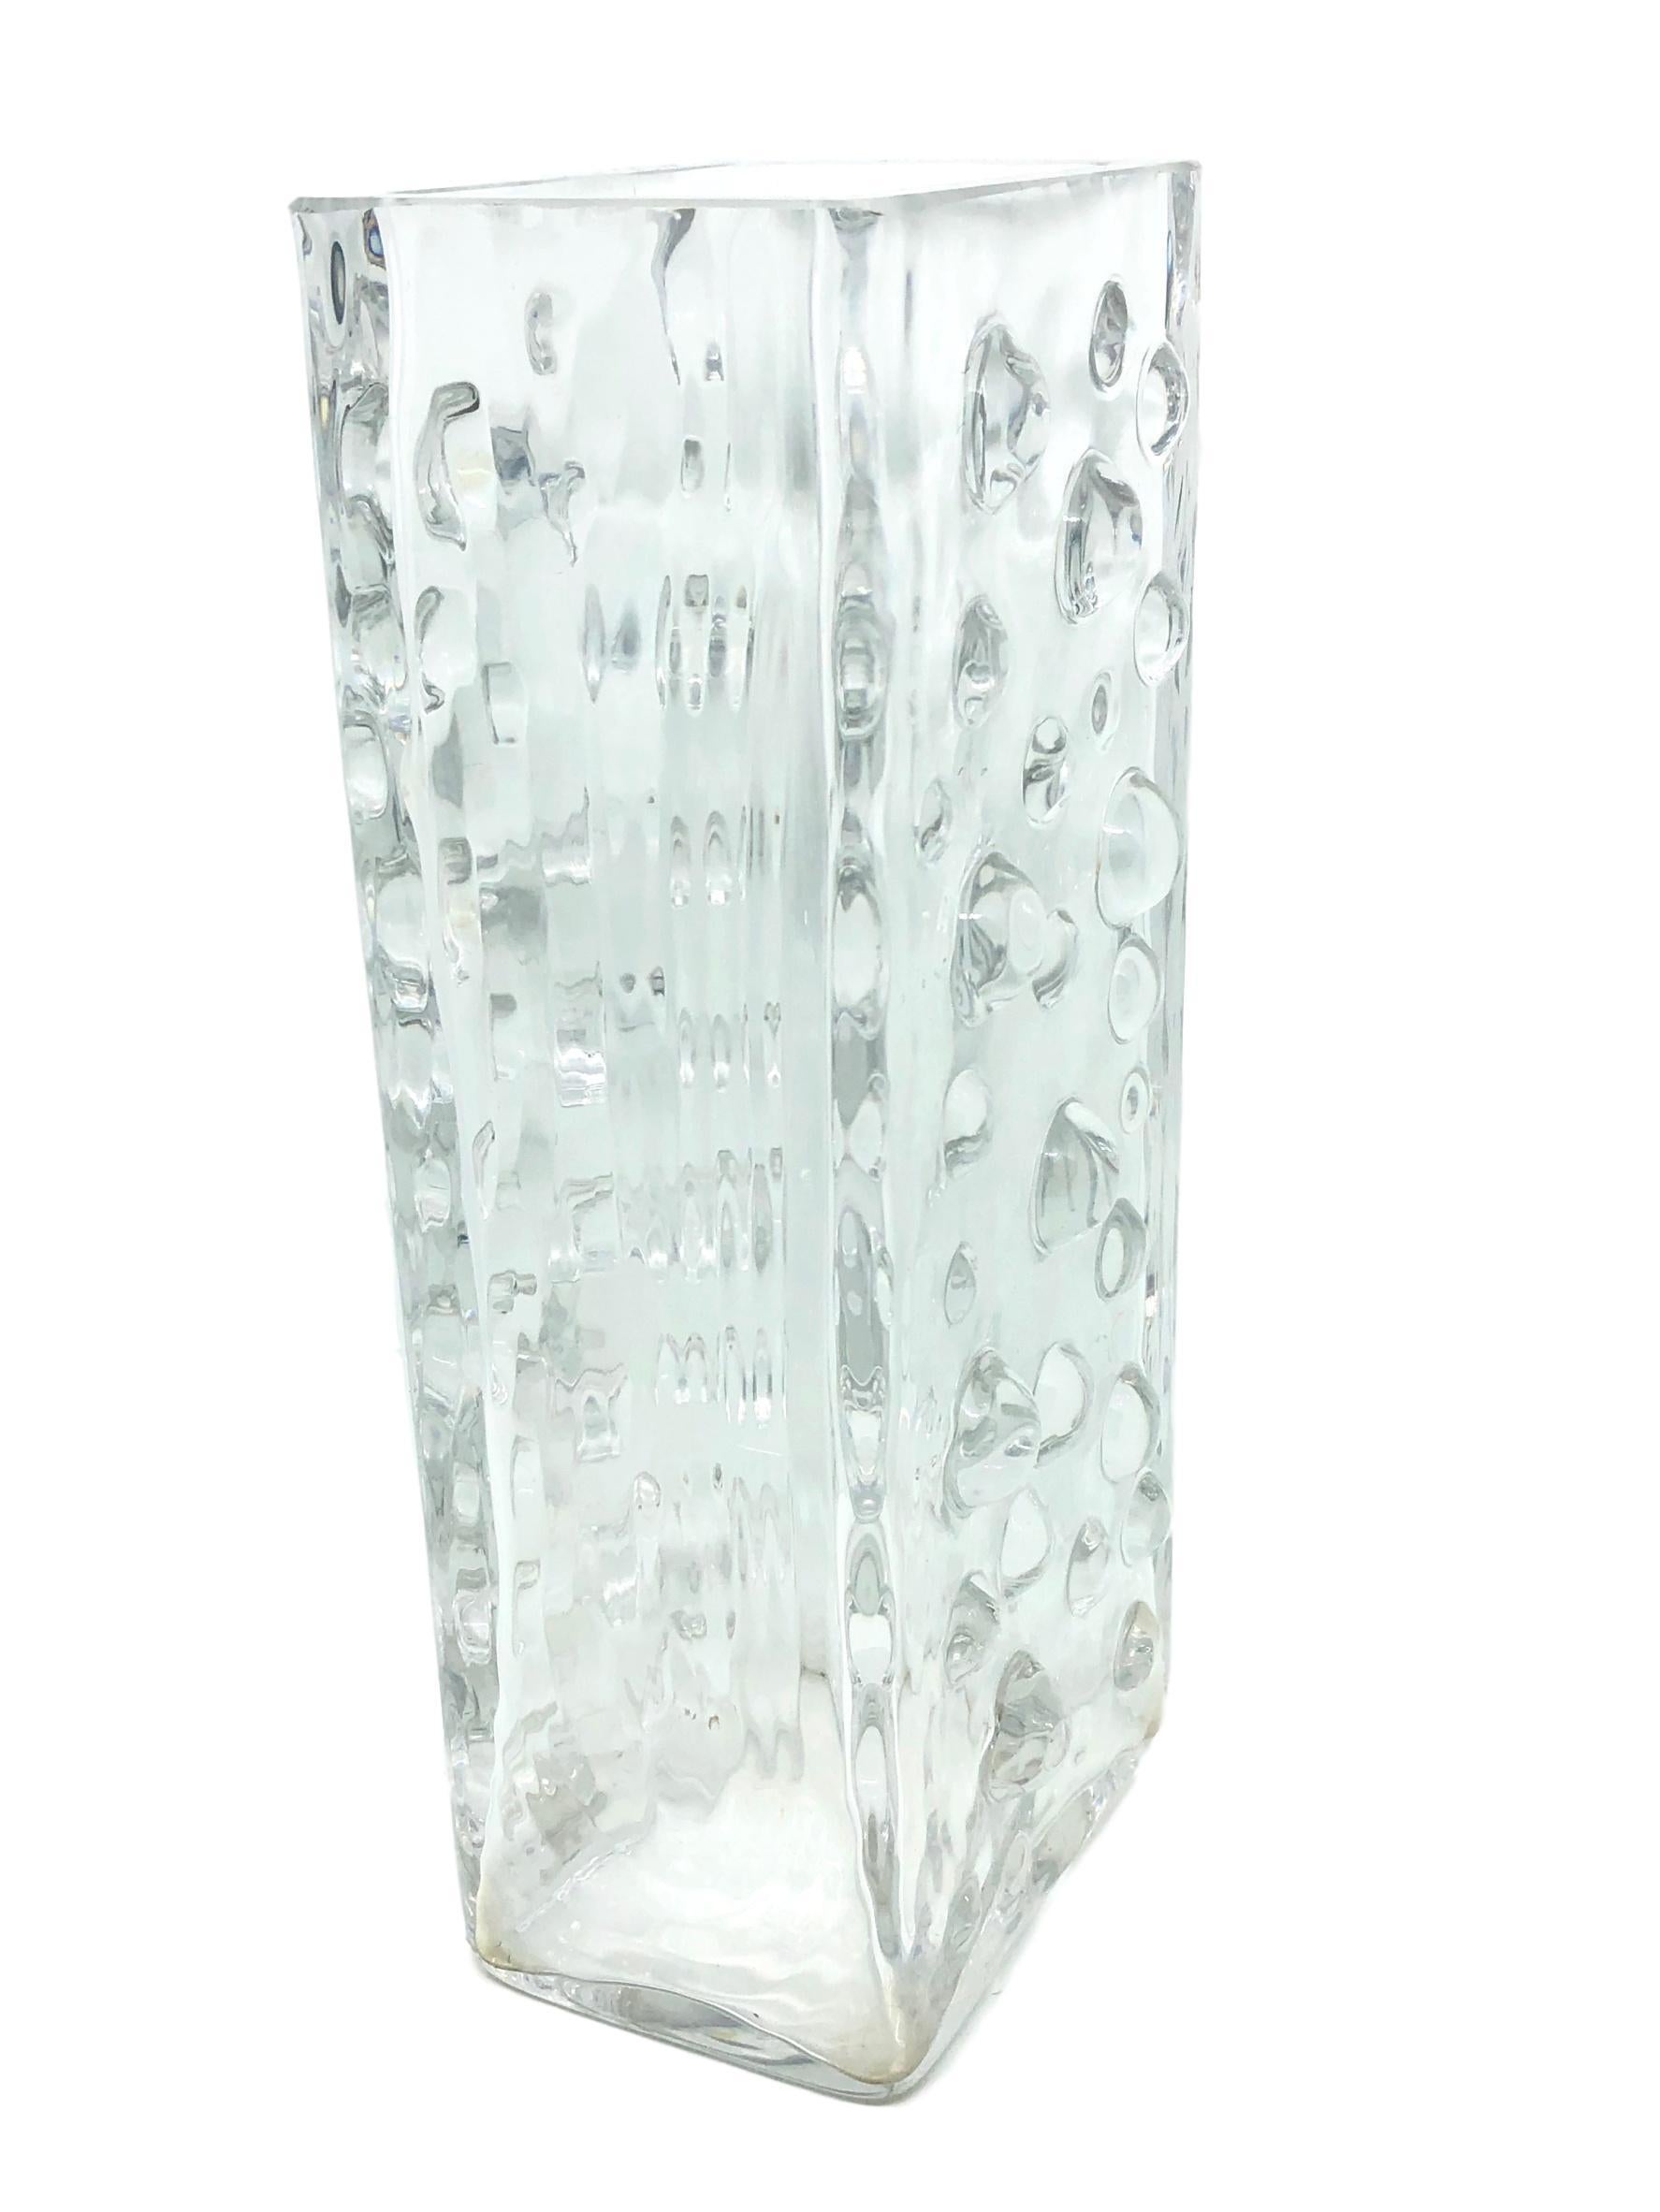 Wunderschöne deutsche Vasen der Jahrhundertmitte von WMF Glas, um 1970. Diese schöne, klare Vase bringt einen Hauch von Spaß und Fantasie in jeden Raum. Dieses schöne Stück aus sehr schwerem Kunstglas ist eine schöne Ergänzung für jeden Raum. Innen